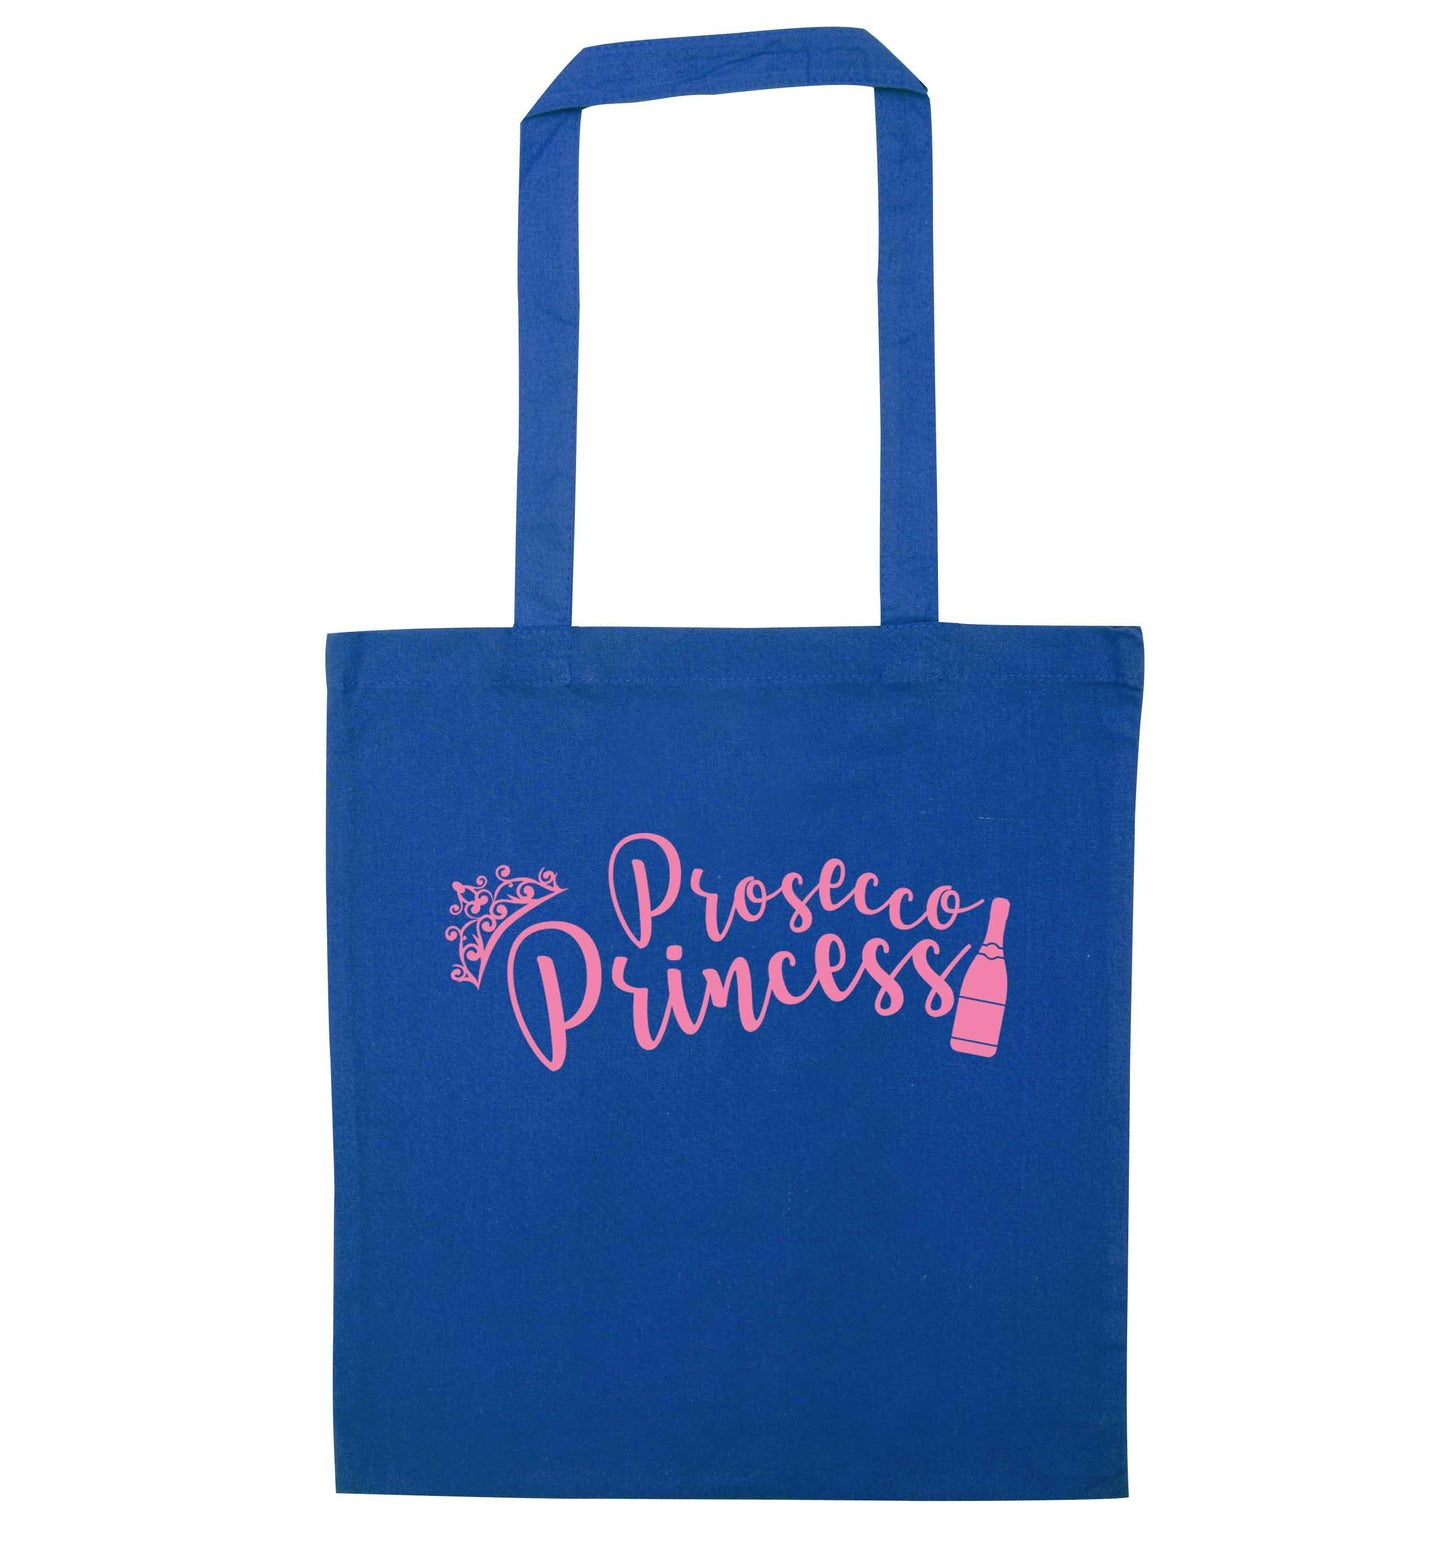 Prosecco princess blue tote bag